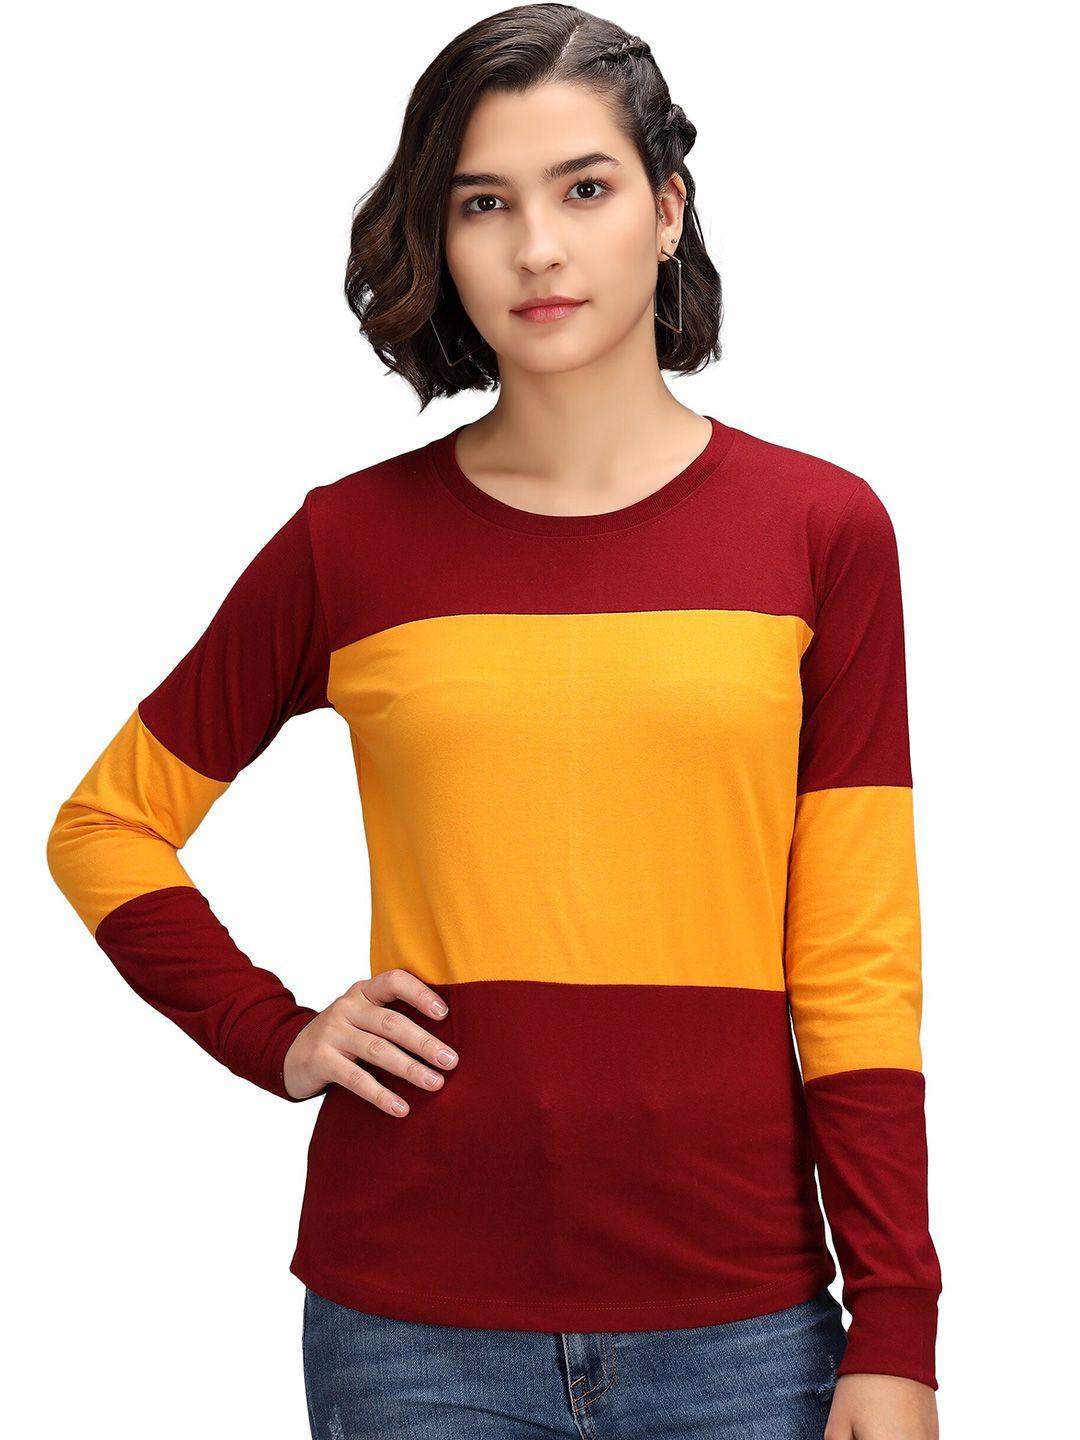 pockman women maroon & yellow colourblocked pockets t-shirt